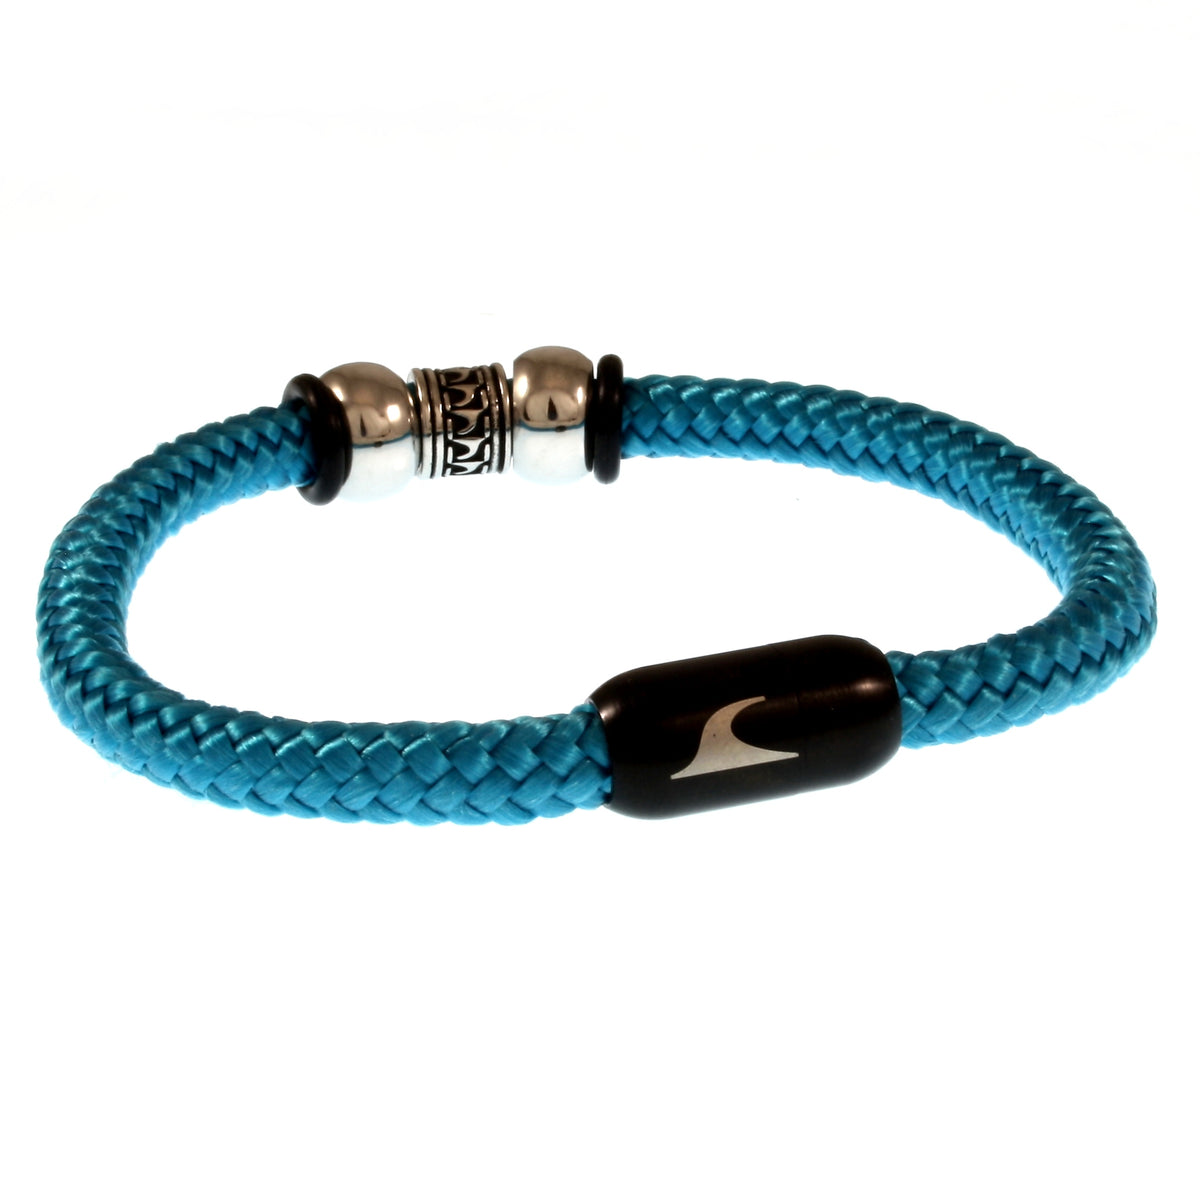 Herren-Segeltau-Armband-atoll-blau-schwarz-geflochten-Edelstahlverschluss-hinten-wavepirate-shop-st